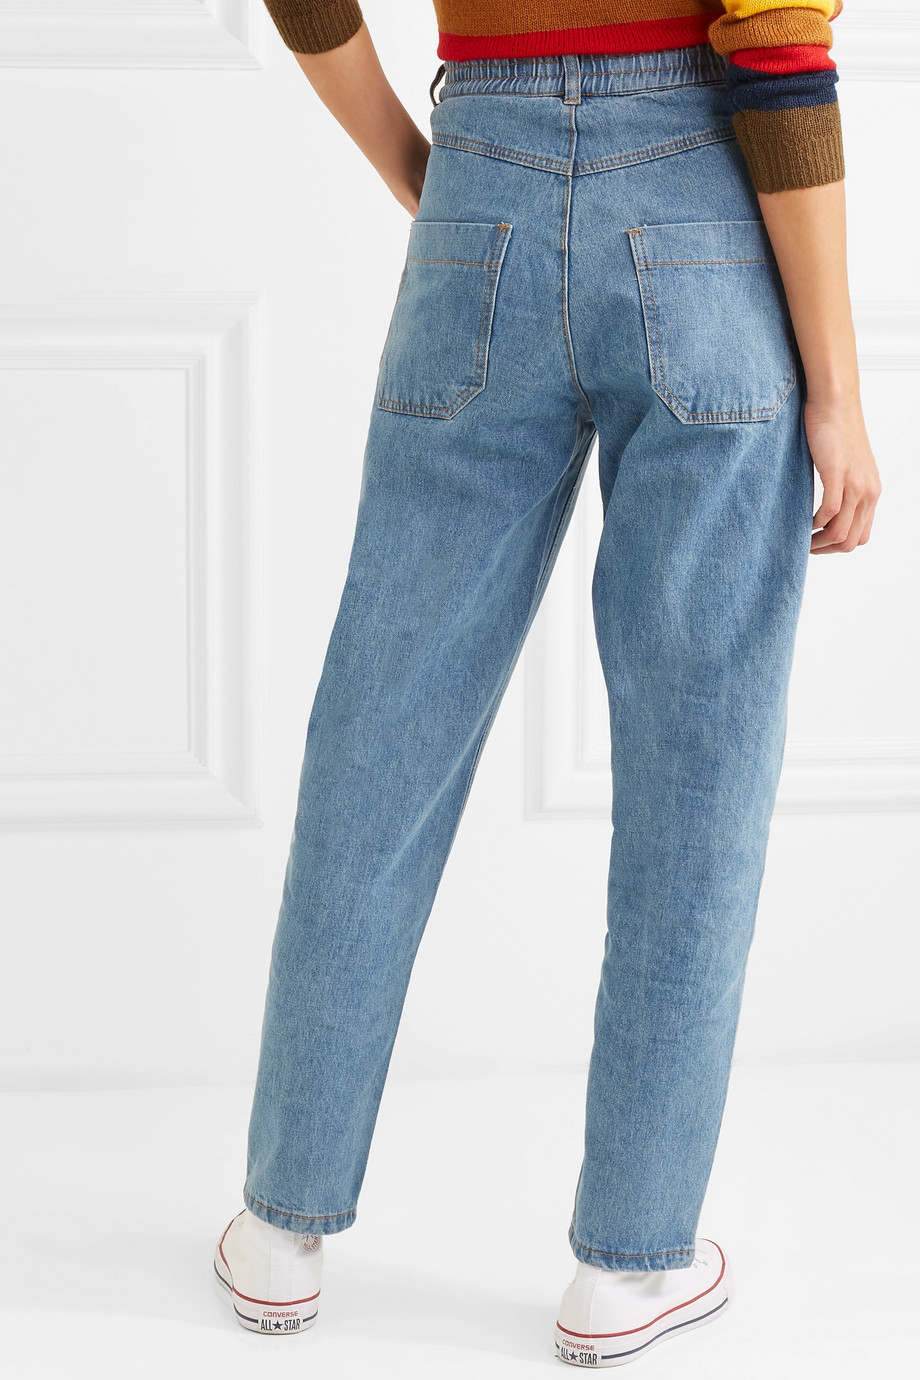 calça jeans cintura alta anos 80